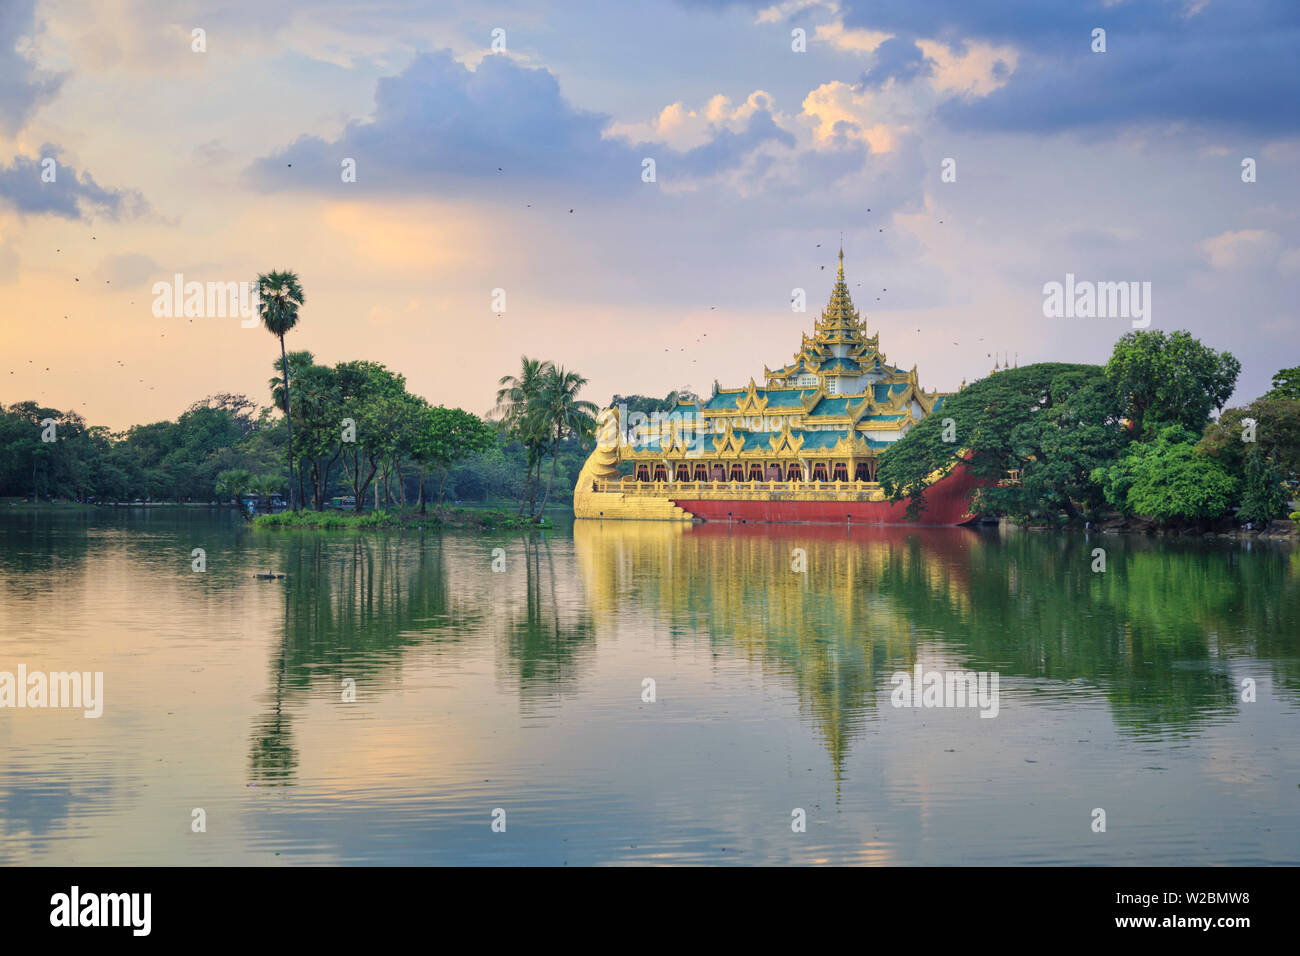 Myanmar (Burma), Yangon (Rangoon), Shwedagon Paya (Pagoda), Karaweik Hall and Kandawgyi Lake Stock Photo